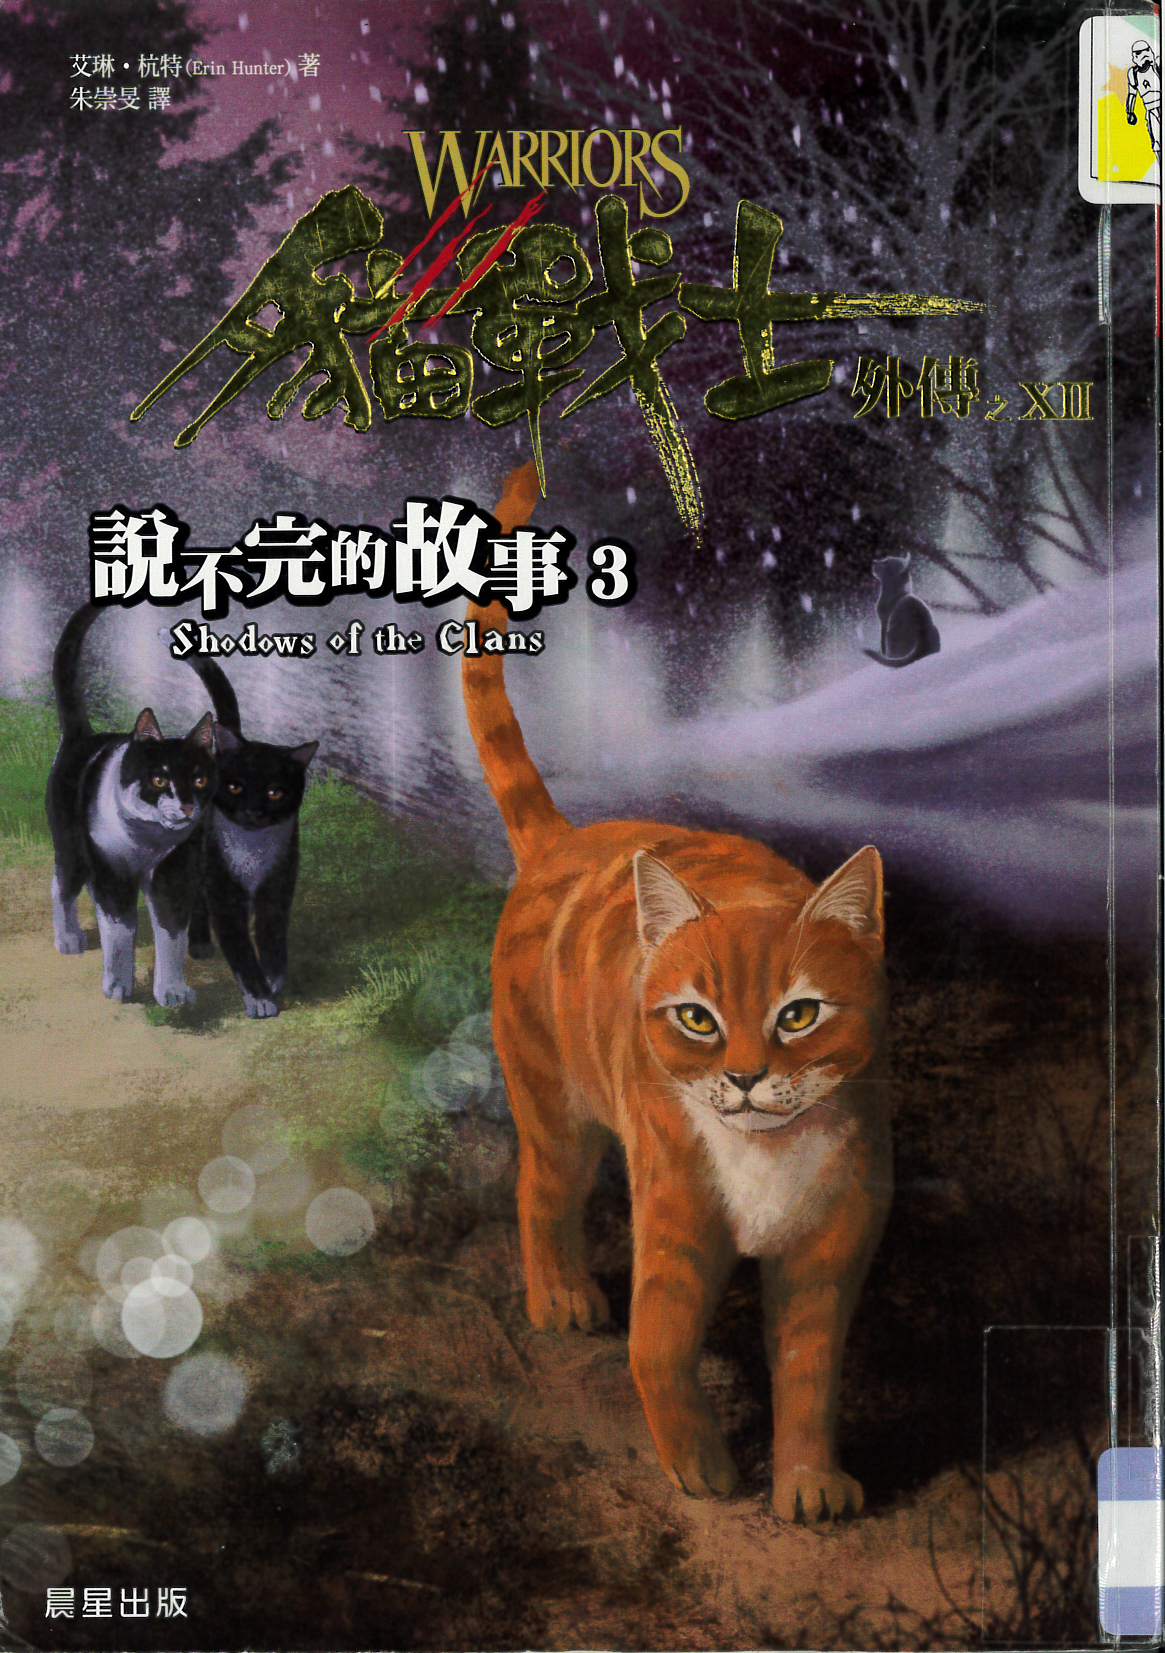 貓戰士外傳(XII) : 說不完的故事(3)